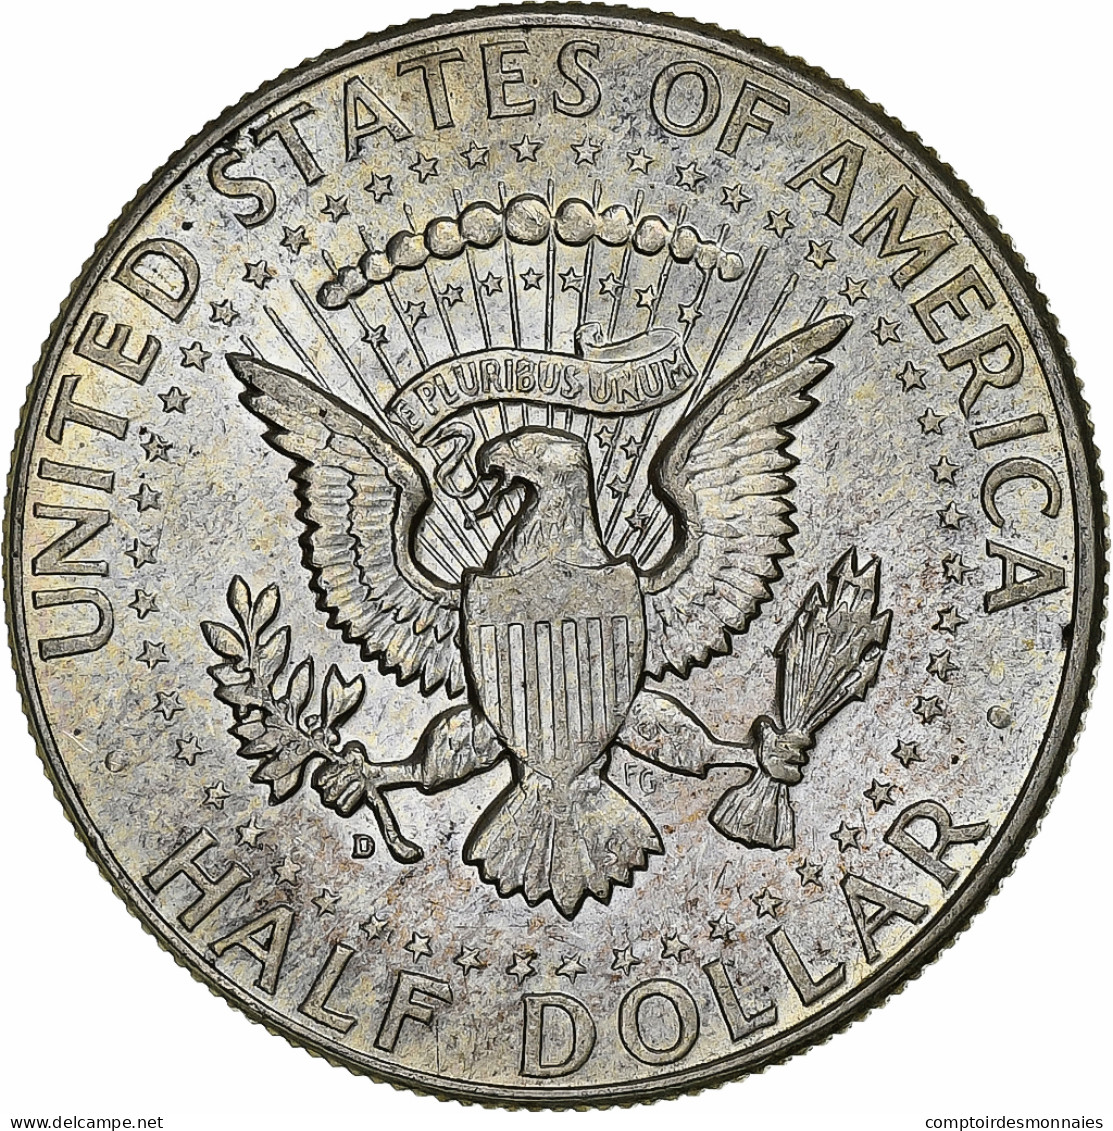 Monnaie, États-Unis, Kennedy Half Dollar, Half Dollar, 1964, U.S. Mint, TTB+ - 1964-…: Kennedy